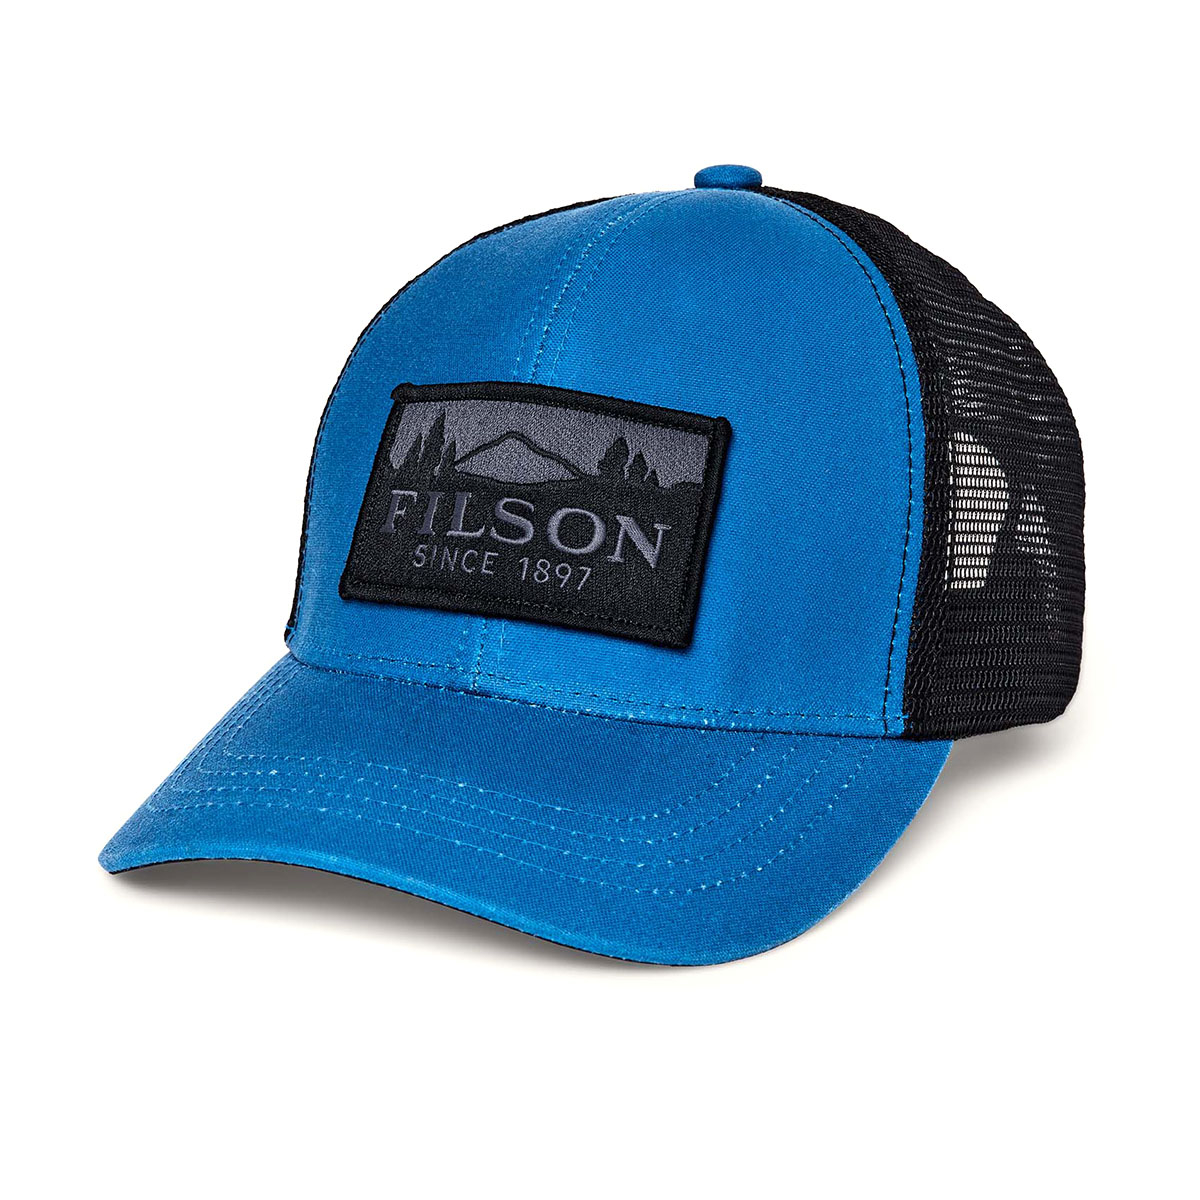 Filson Logger Mesh Cap Marlin Blue, strapazierfähige Kappe aus ikonischem, wasserabweisendem Tin Cloth